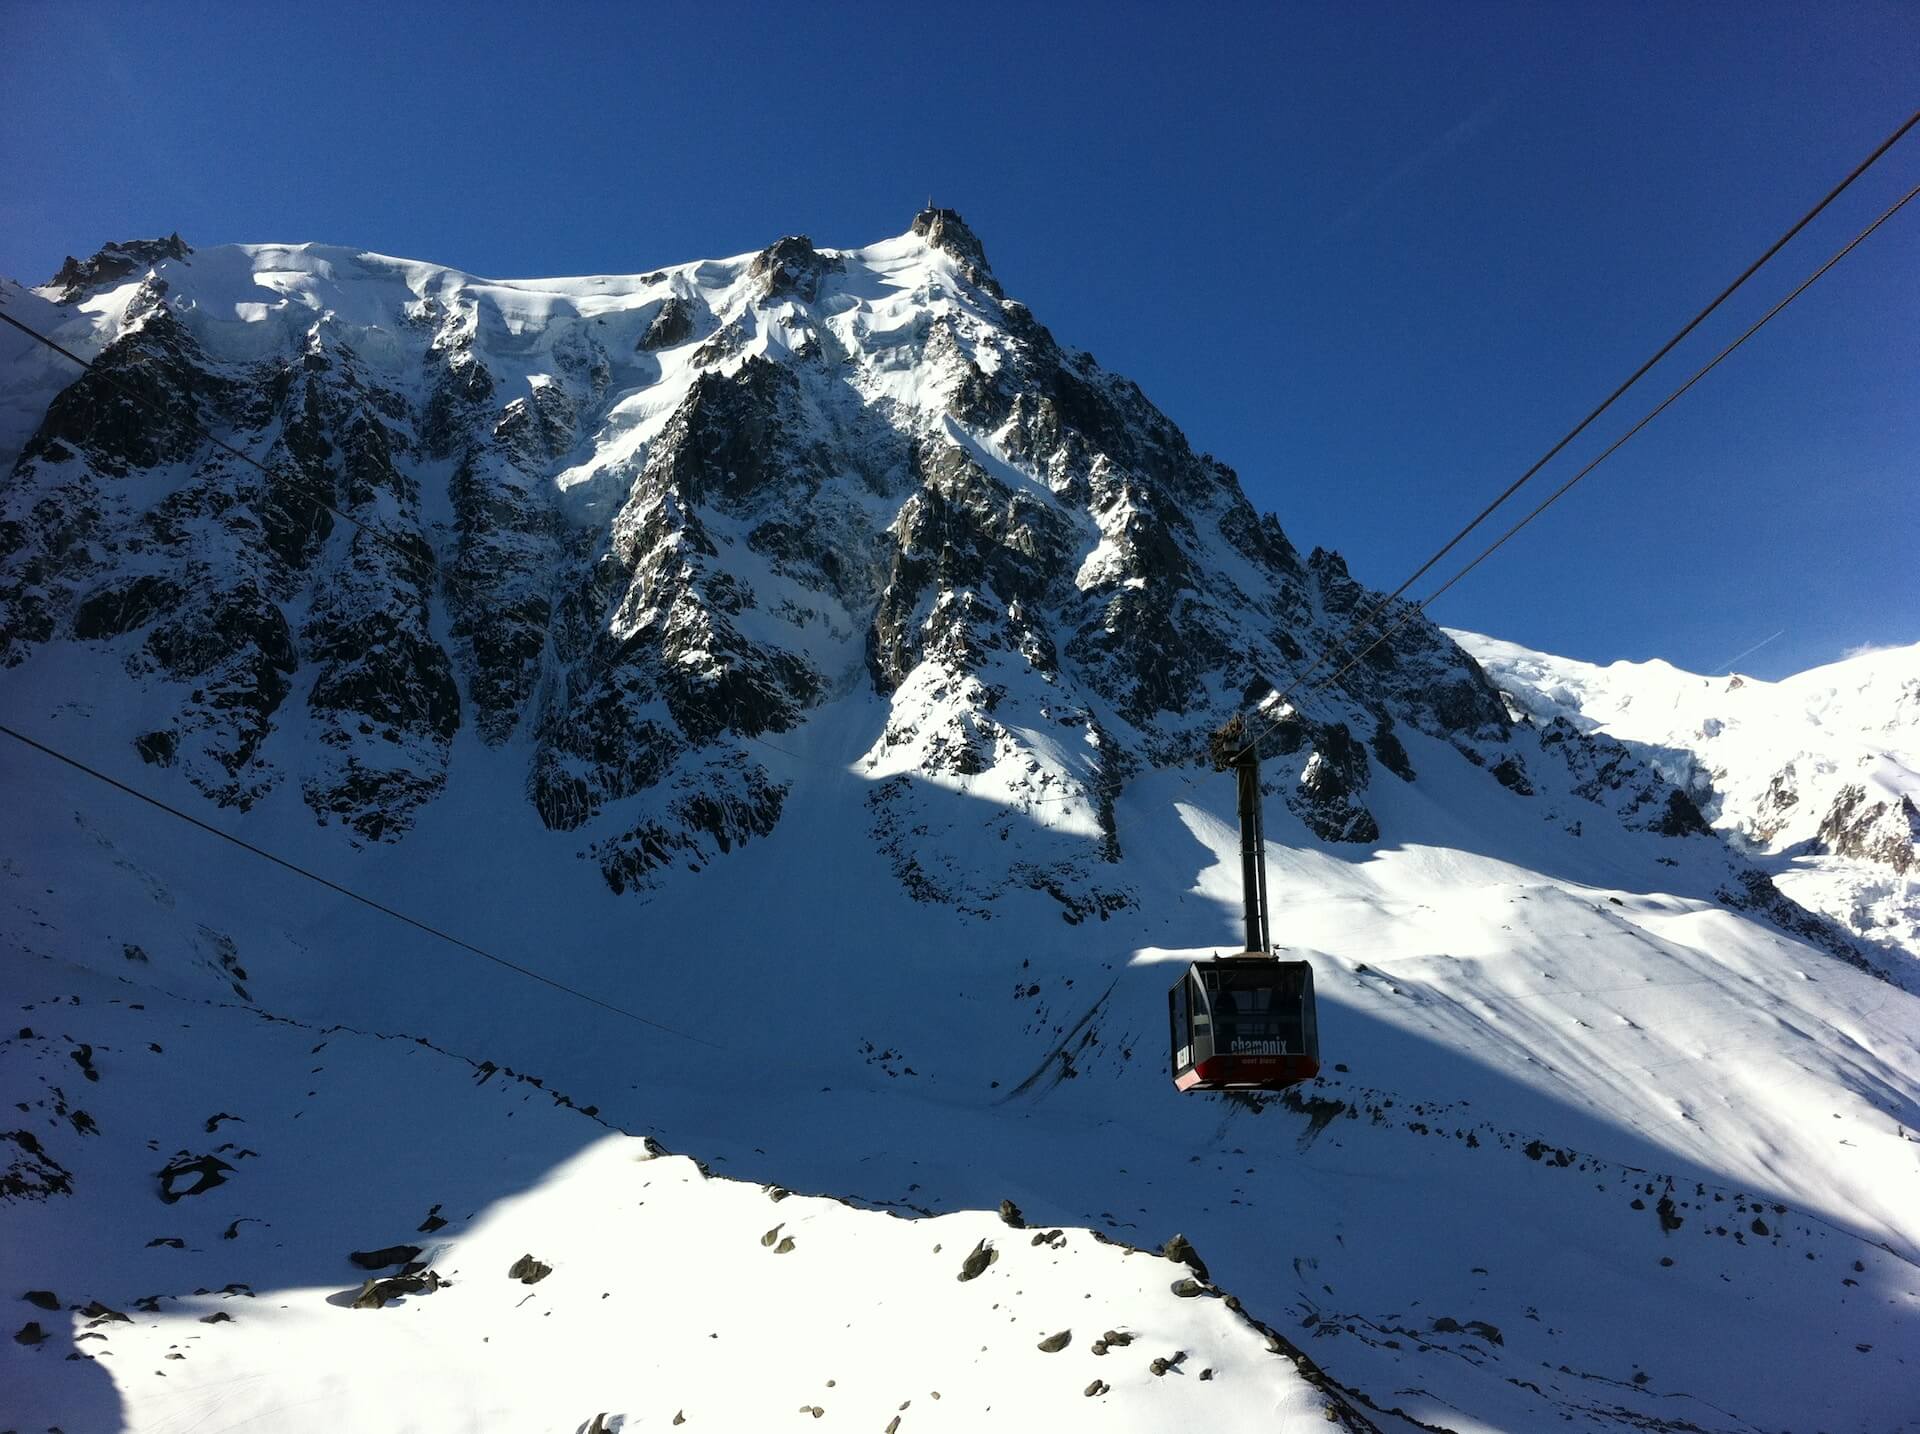 Chamonix-Mont-Blanc Resort and Skiing